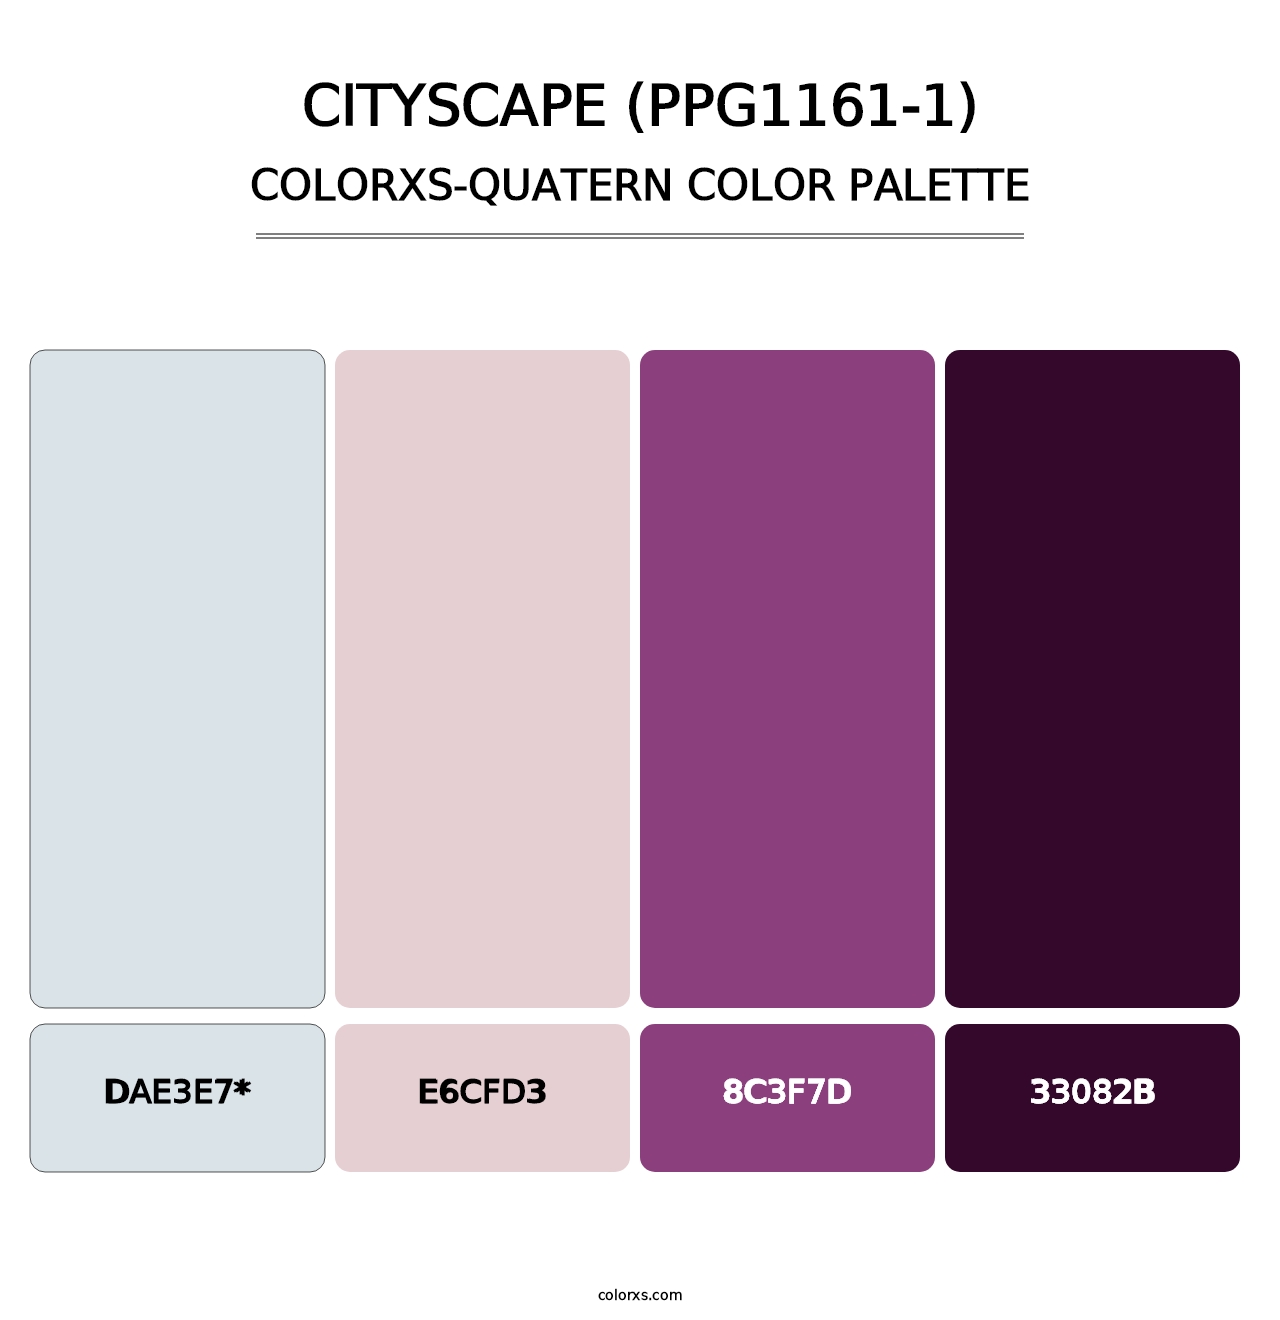 Cityscape (PPG1161-1) - Colorxs Quatern Palette